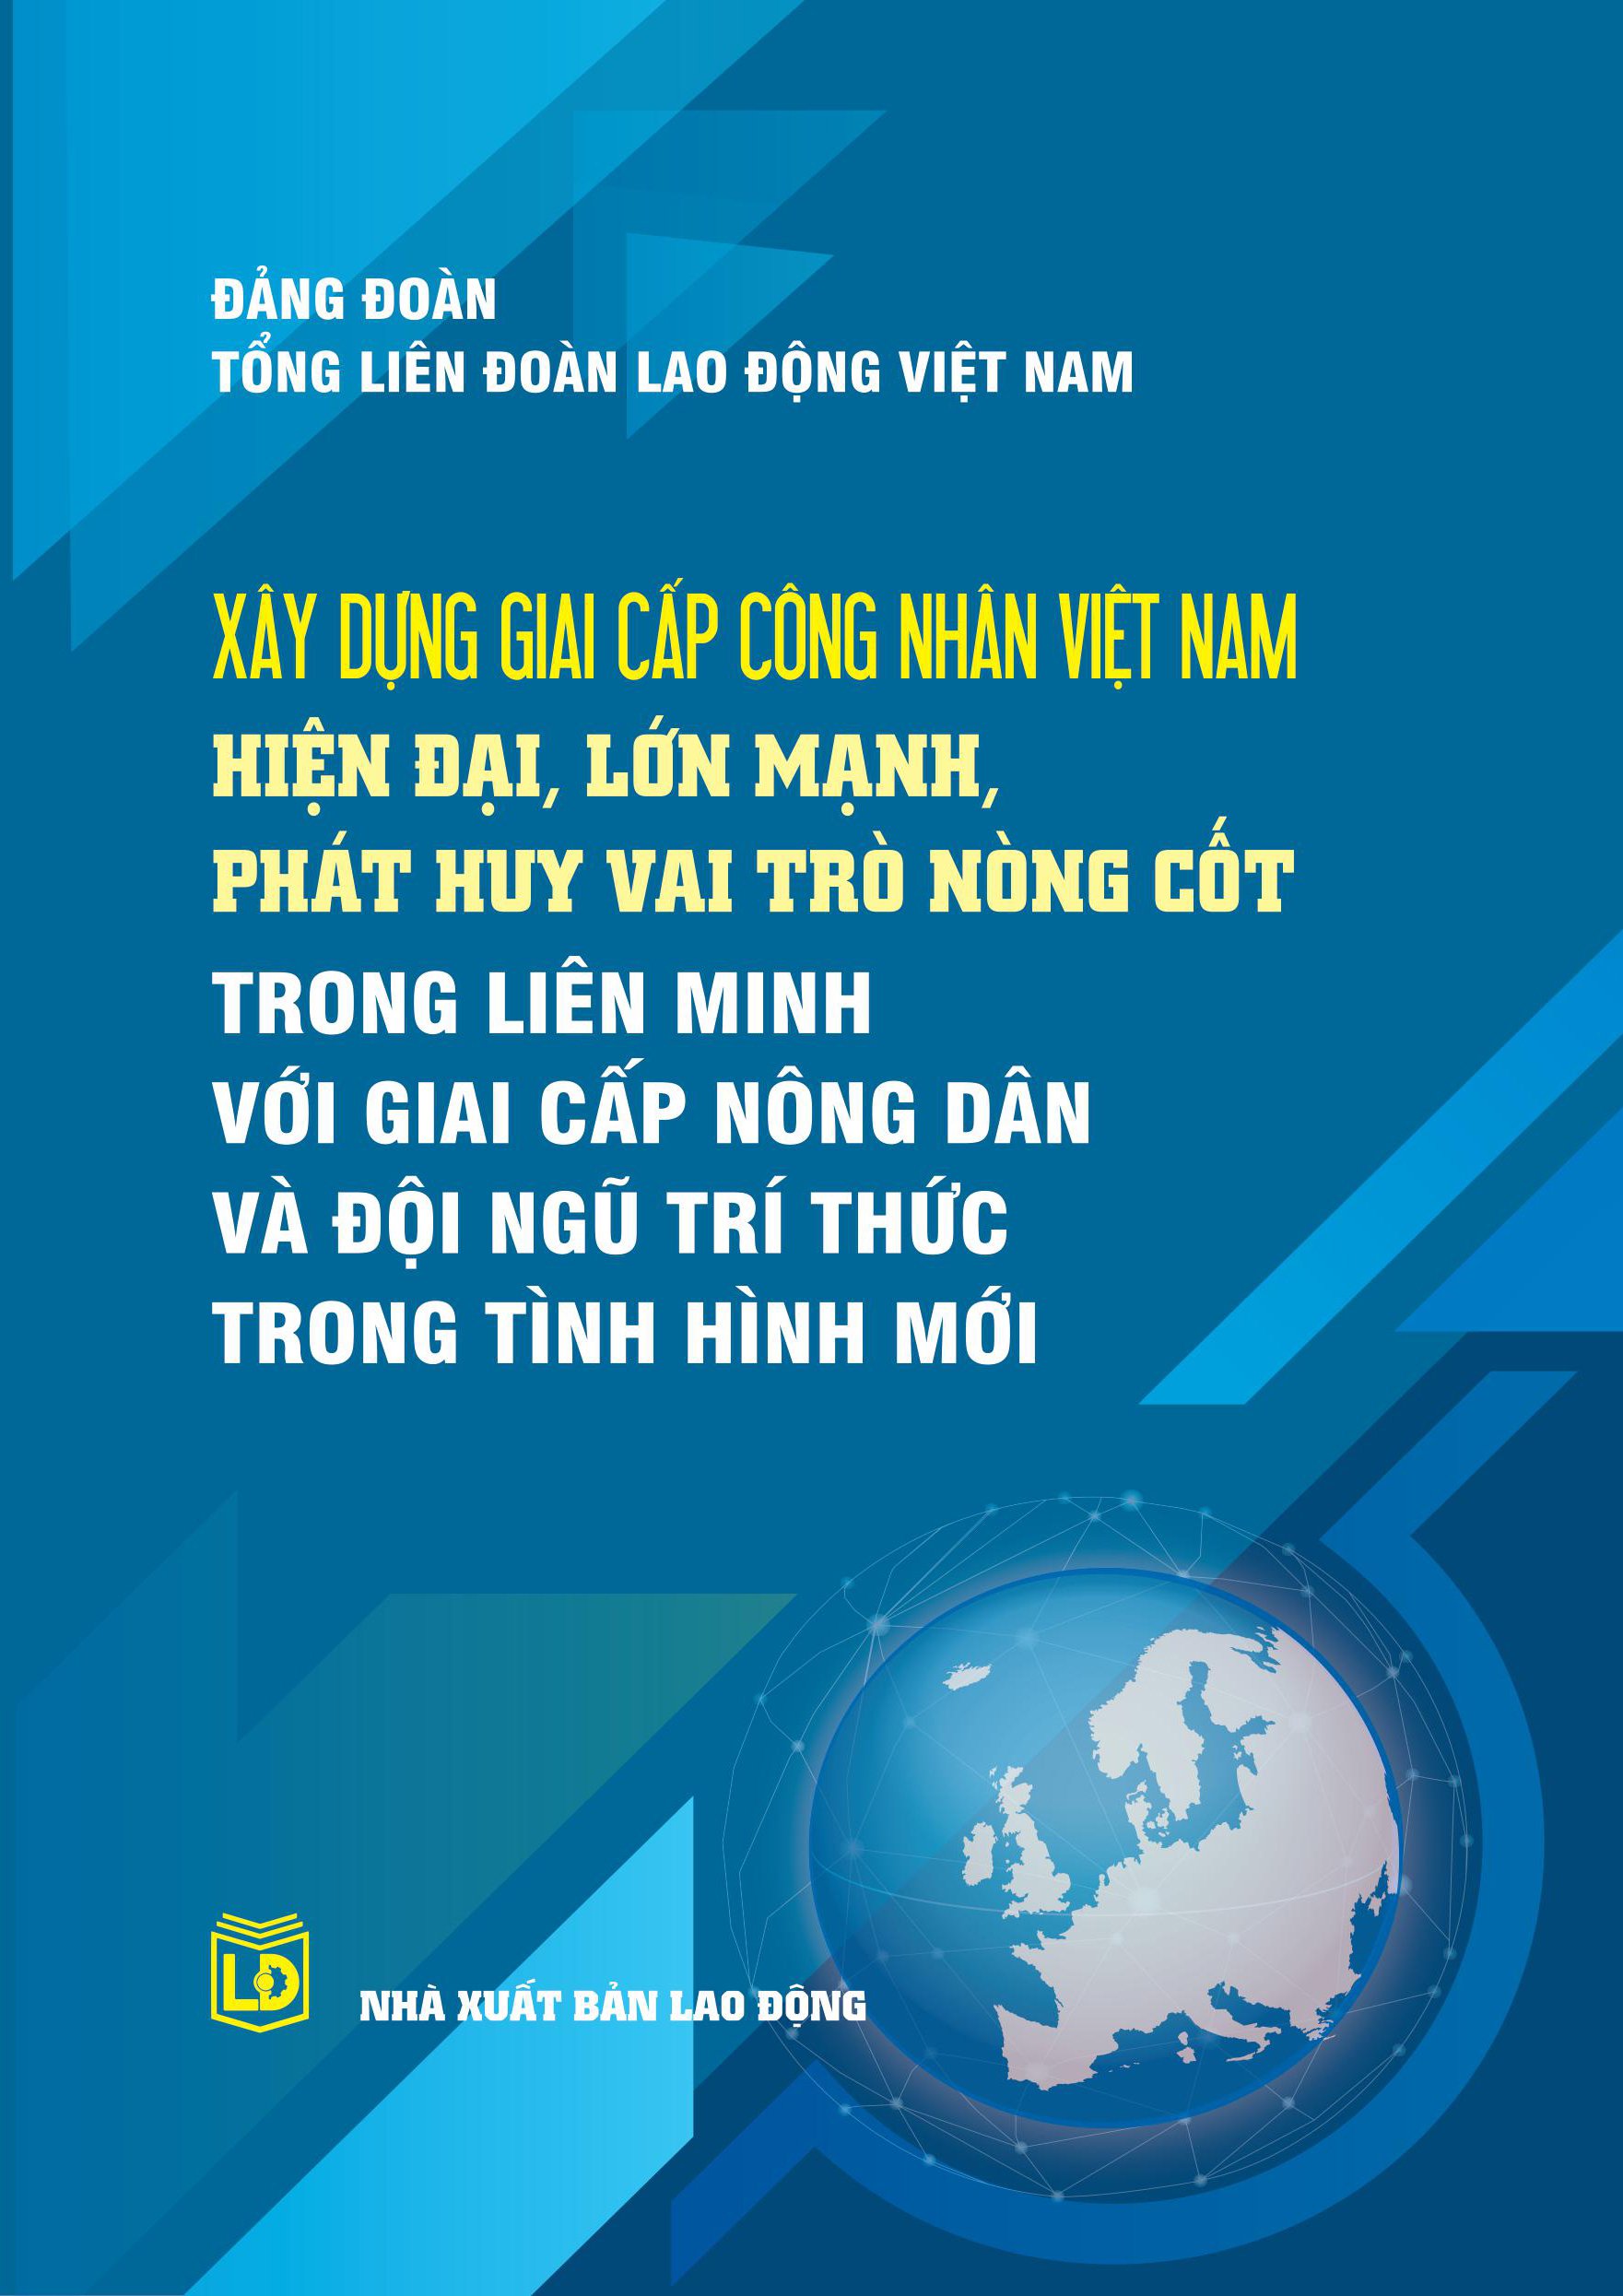 Xây dựng giai cấp công nhân Việt Nam hiện đại, lớn mạnh, phát huy vai trò nòng cốt trong liên minh với giai cấp nông dân và đội ngũ trí thức trong tình hình mới